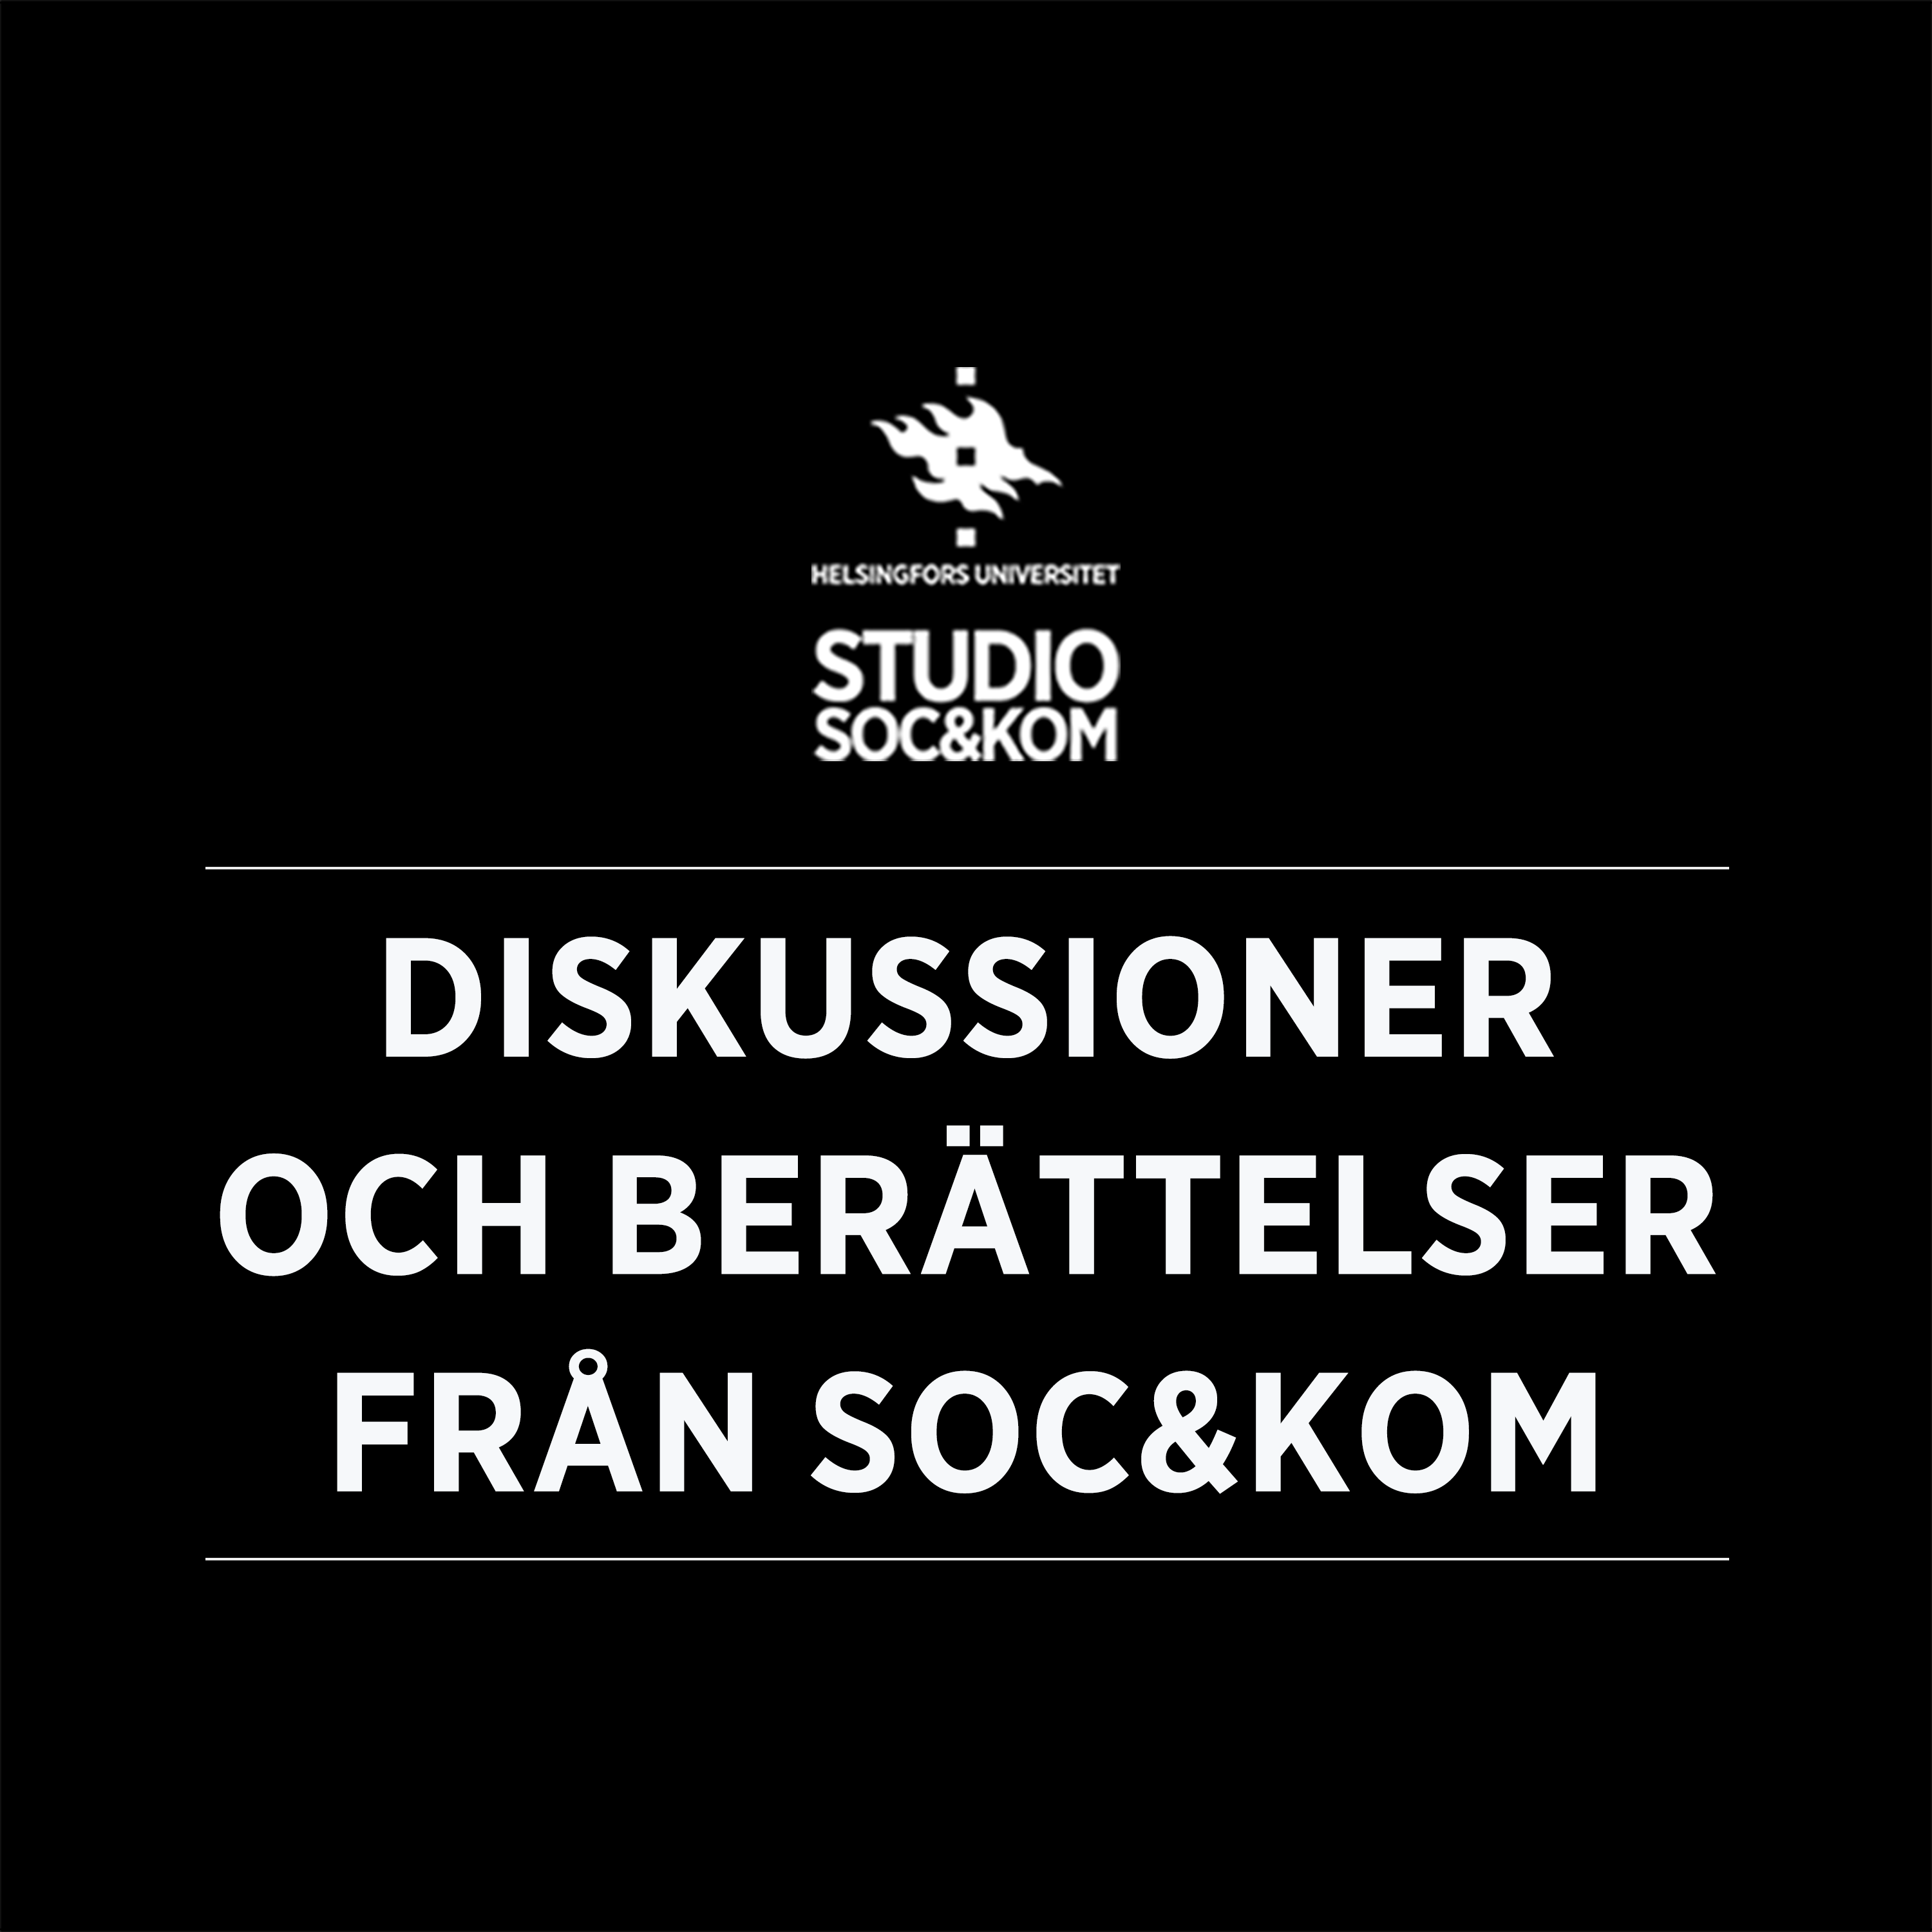 Intervju med Soc&kom-veteraner: Annika Lillrank och Henrik Hägglund